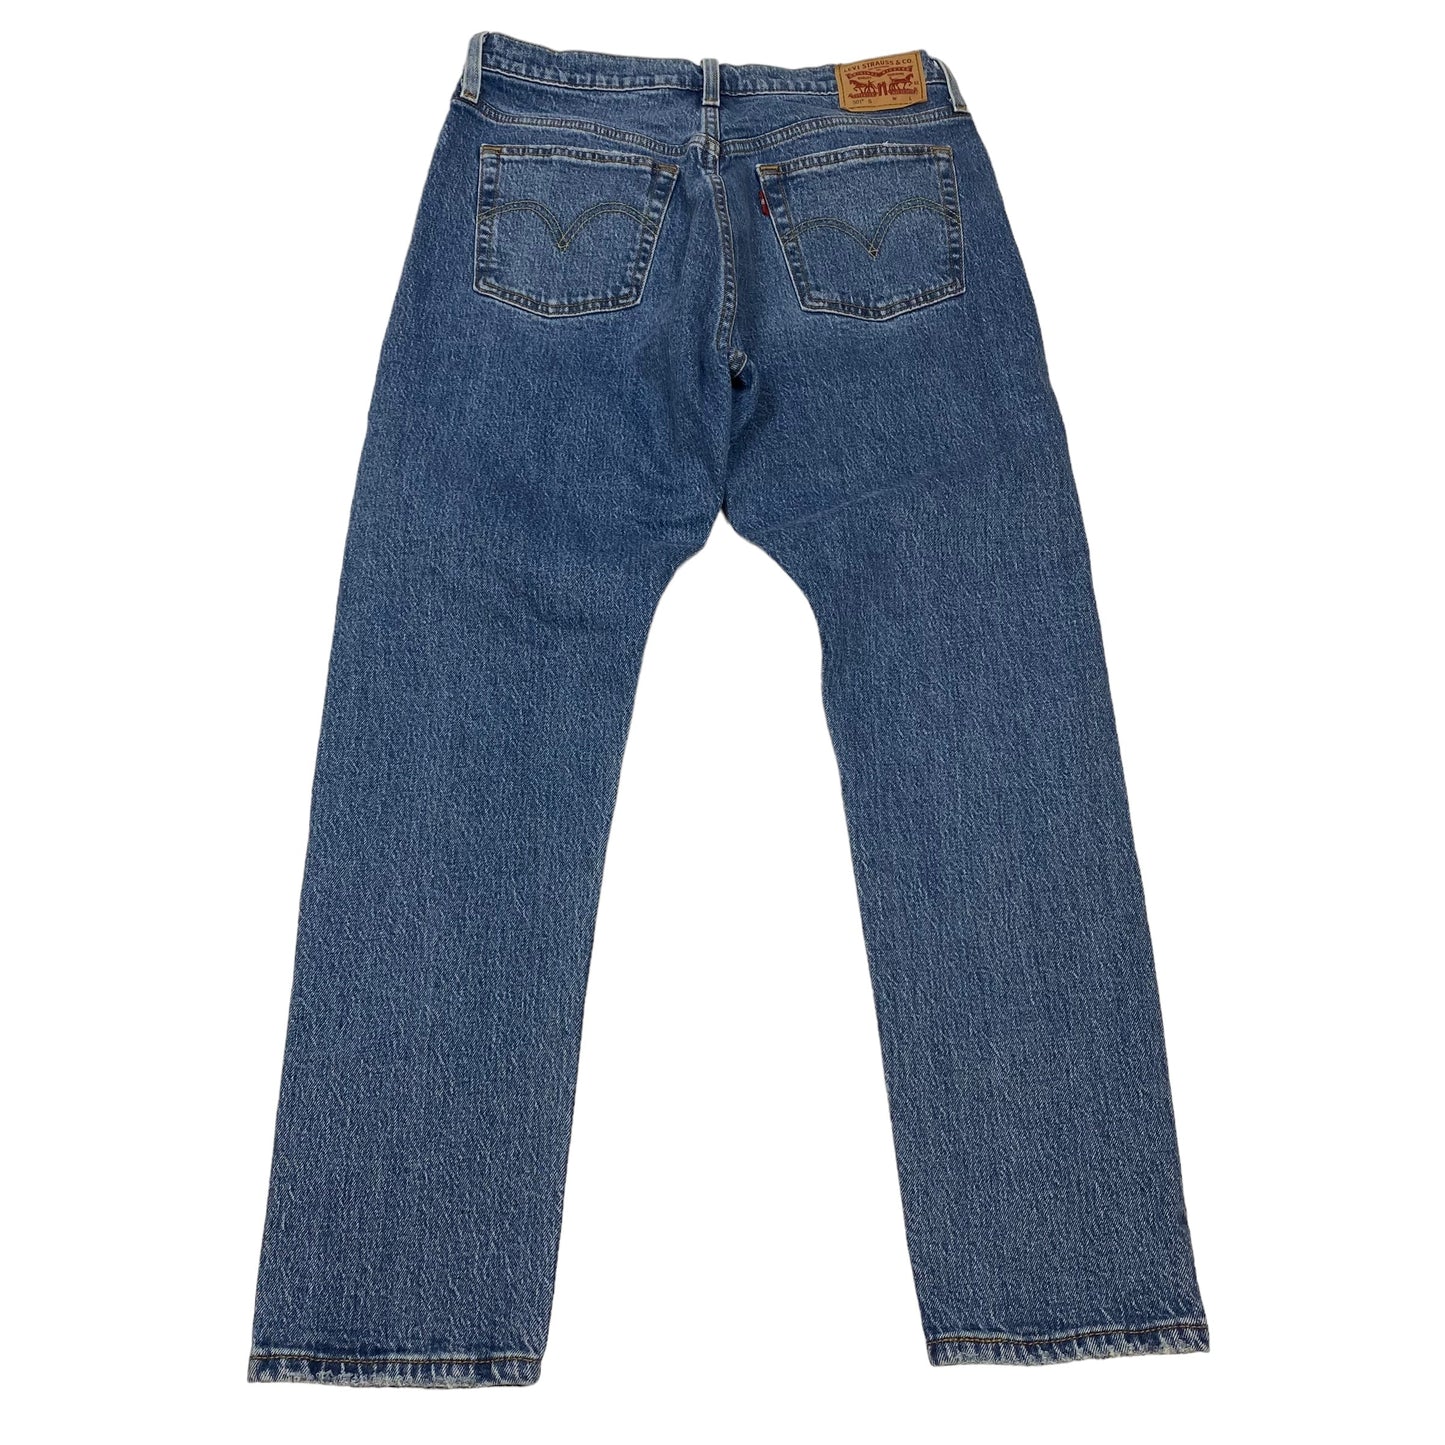 Blue Denim Jeans Straight Levis, Size 8